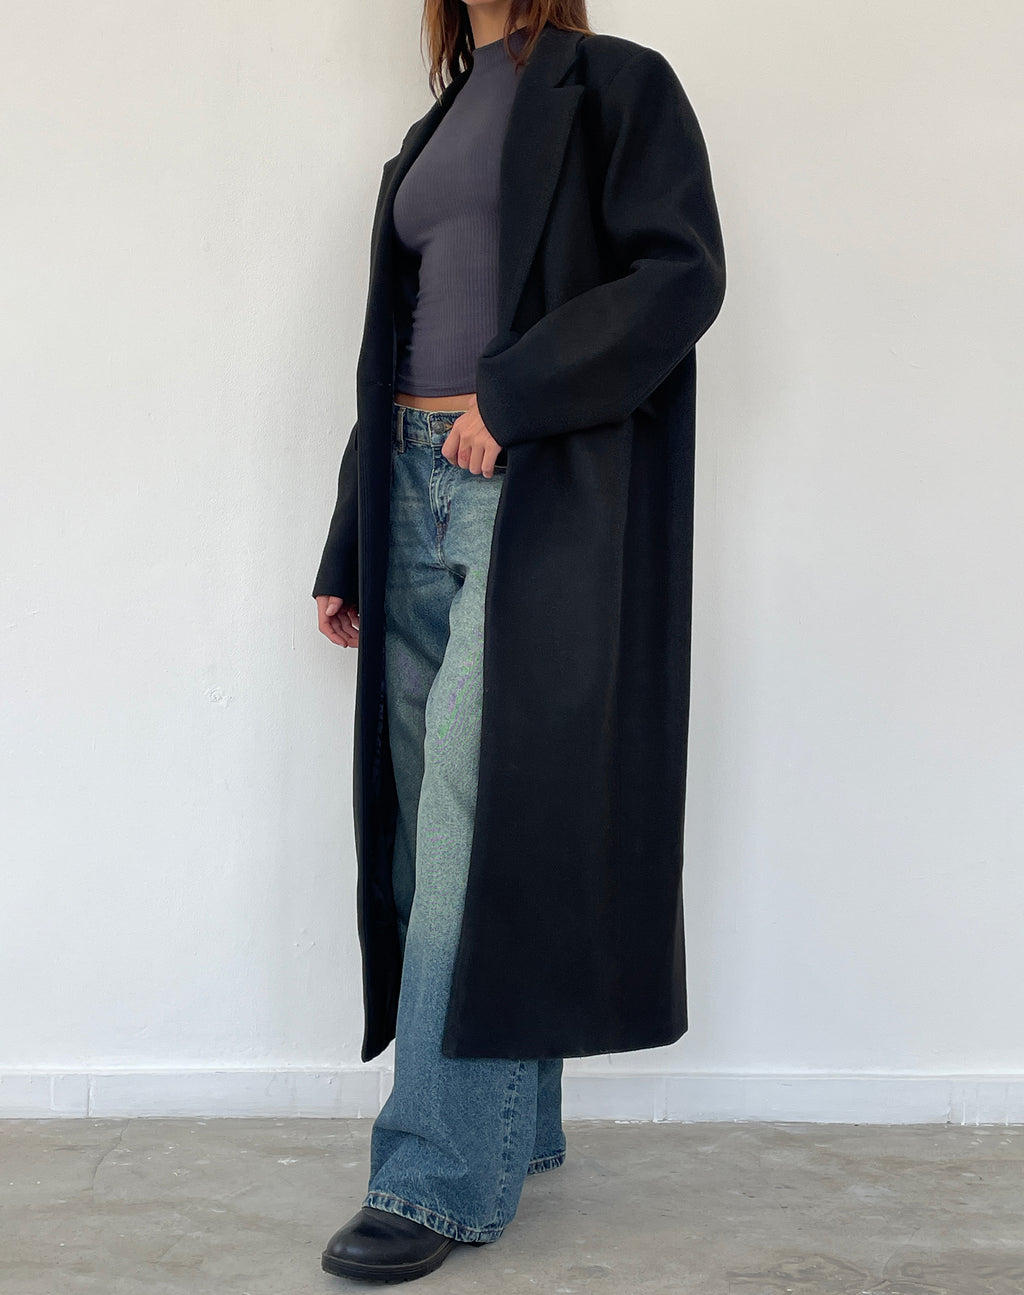 Melani Longline Wool Coat in Black